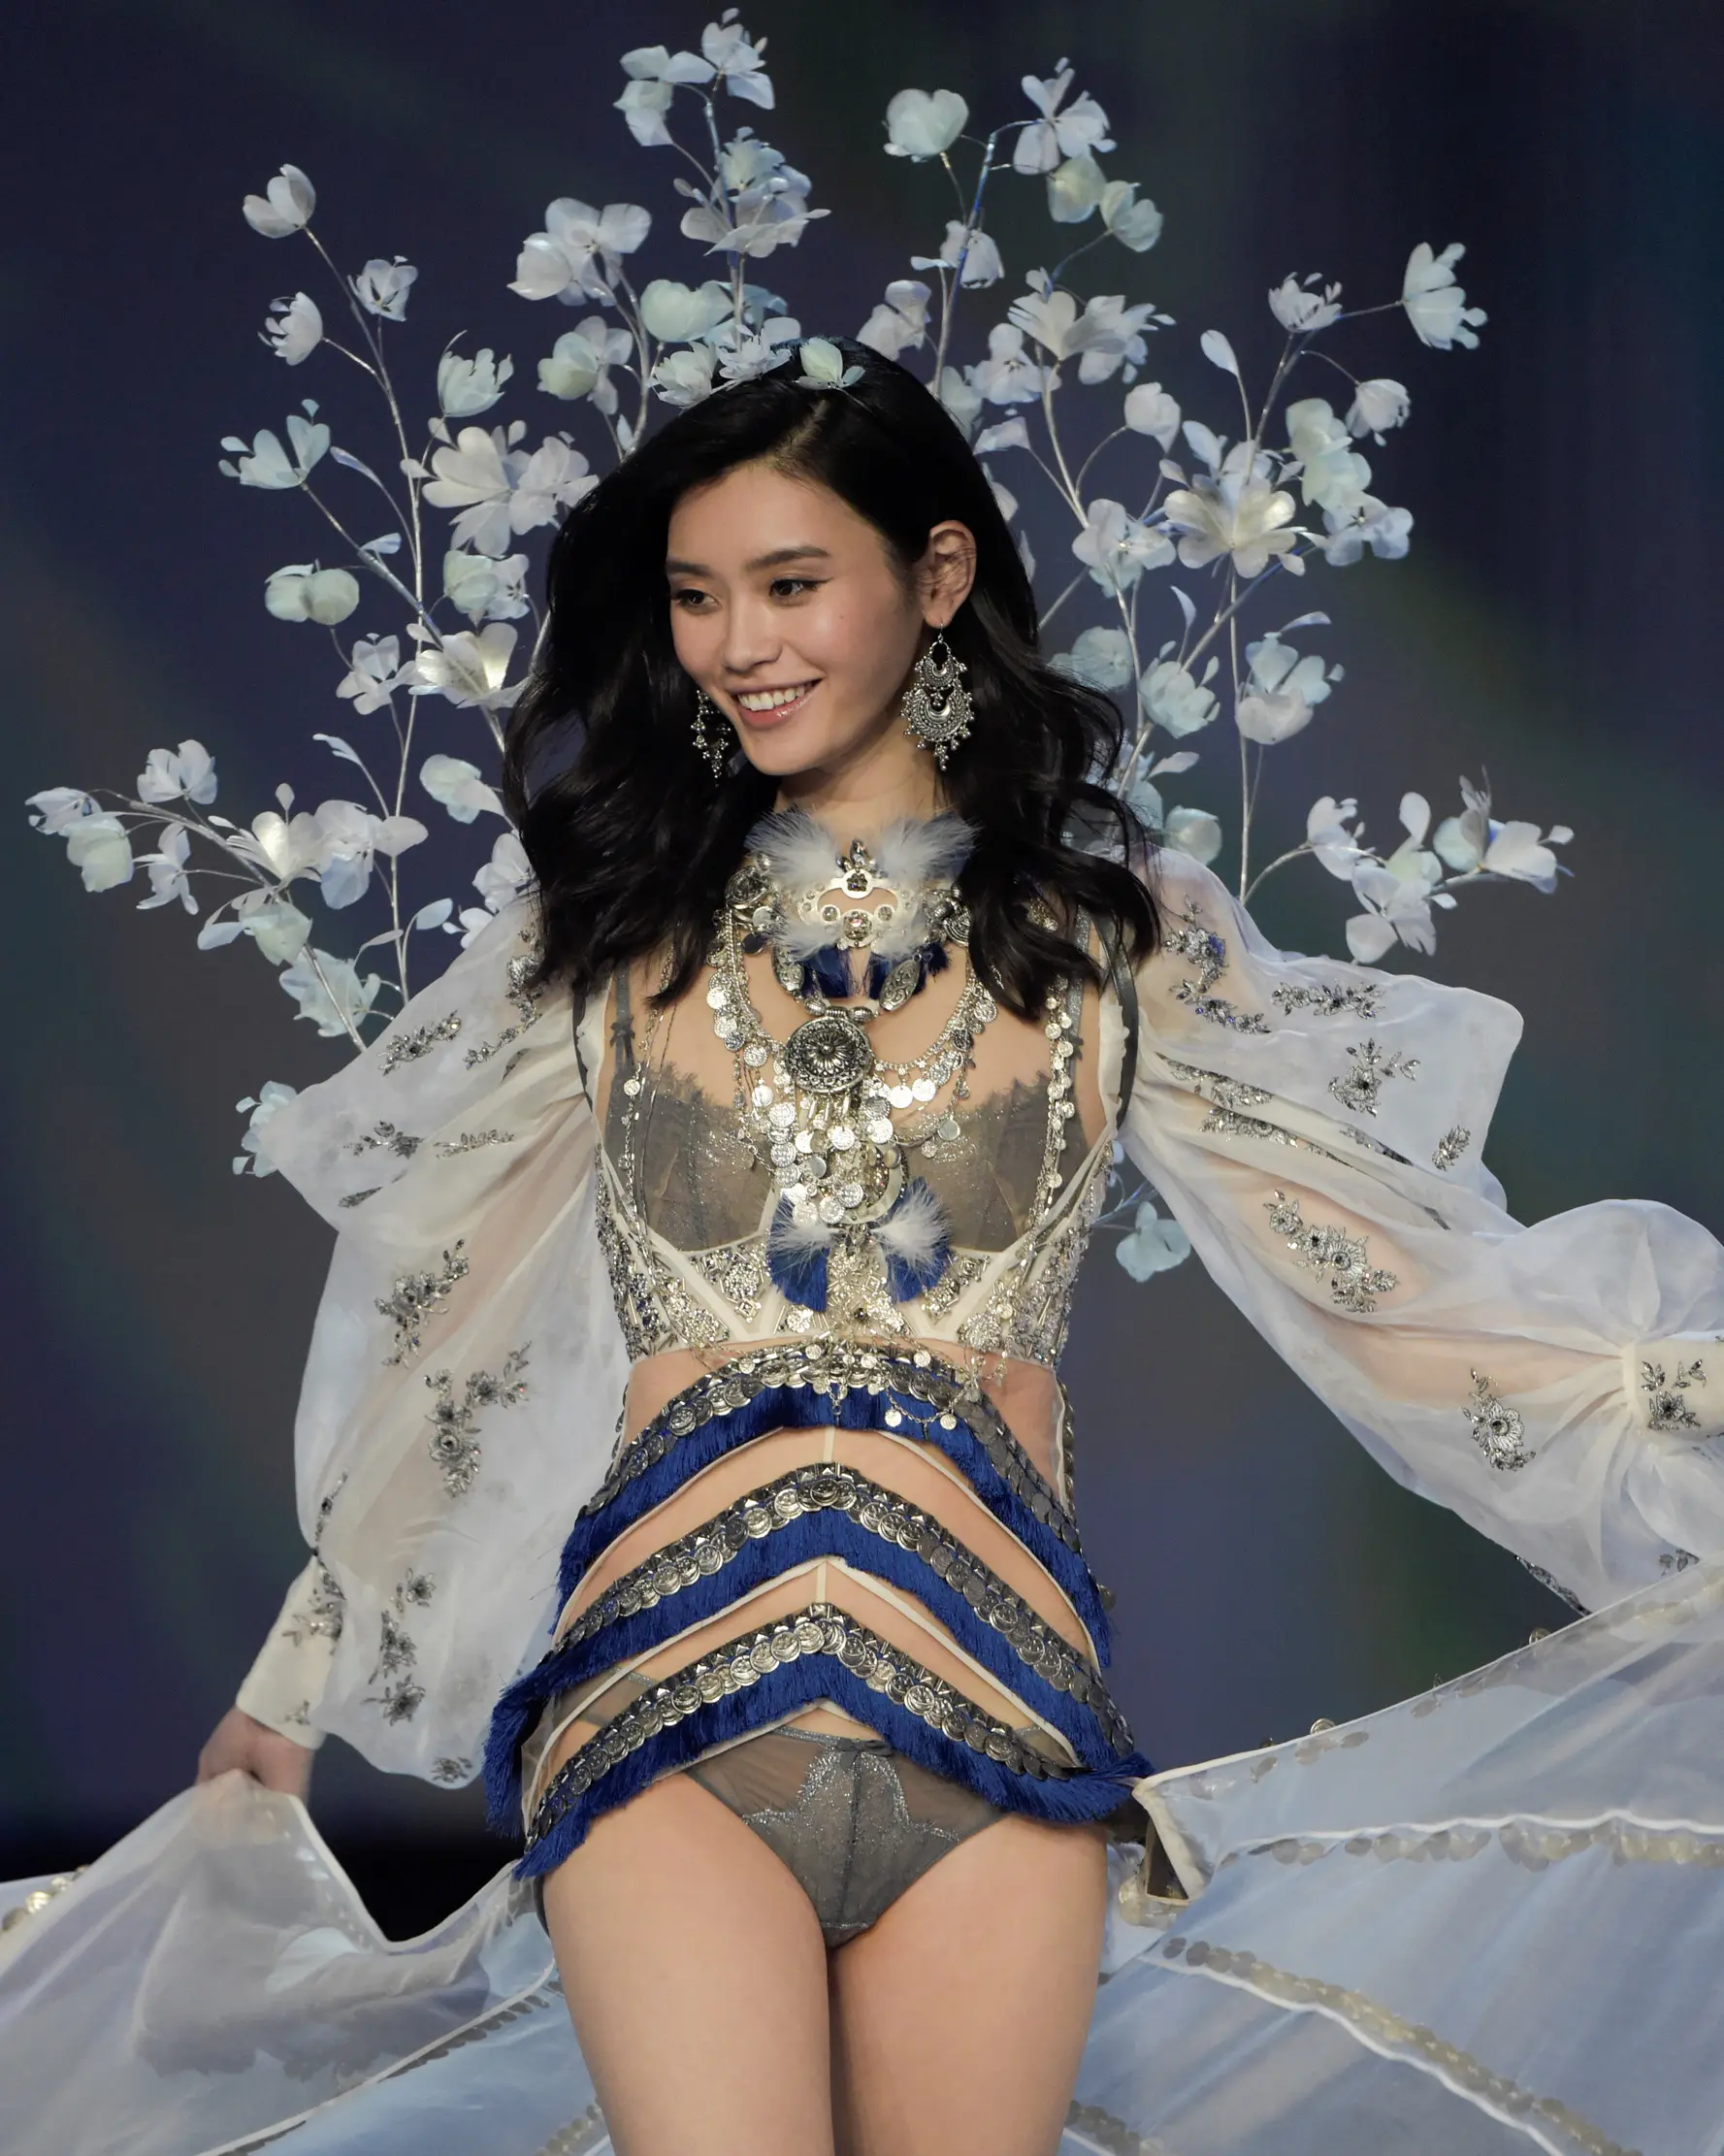 Model Tiongkok, Ming Xi berjalan di atas catwalk memperagakan koleksi lingerie pada Victoria’s Secret Fashion Show 2017 di Shanghai, Senin (20/11). Ming sempat tergelincir dan jatuh tersungkur di catwalk. (FRED DUFOUR/AFP)